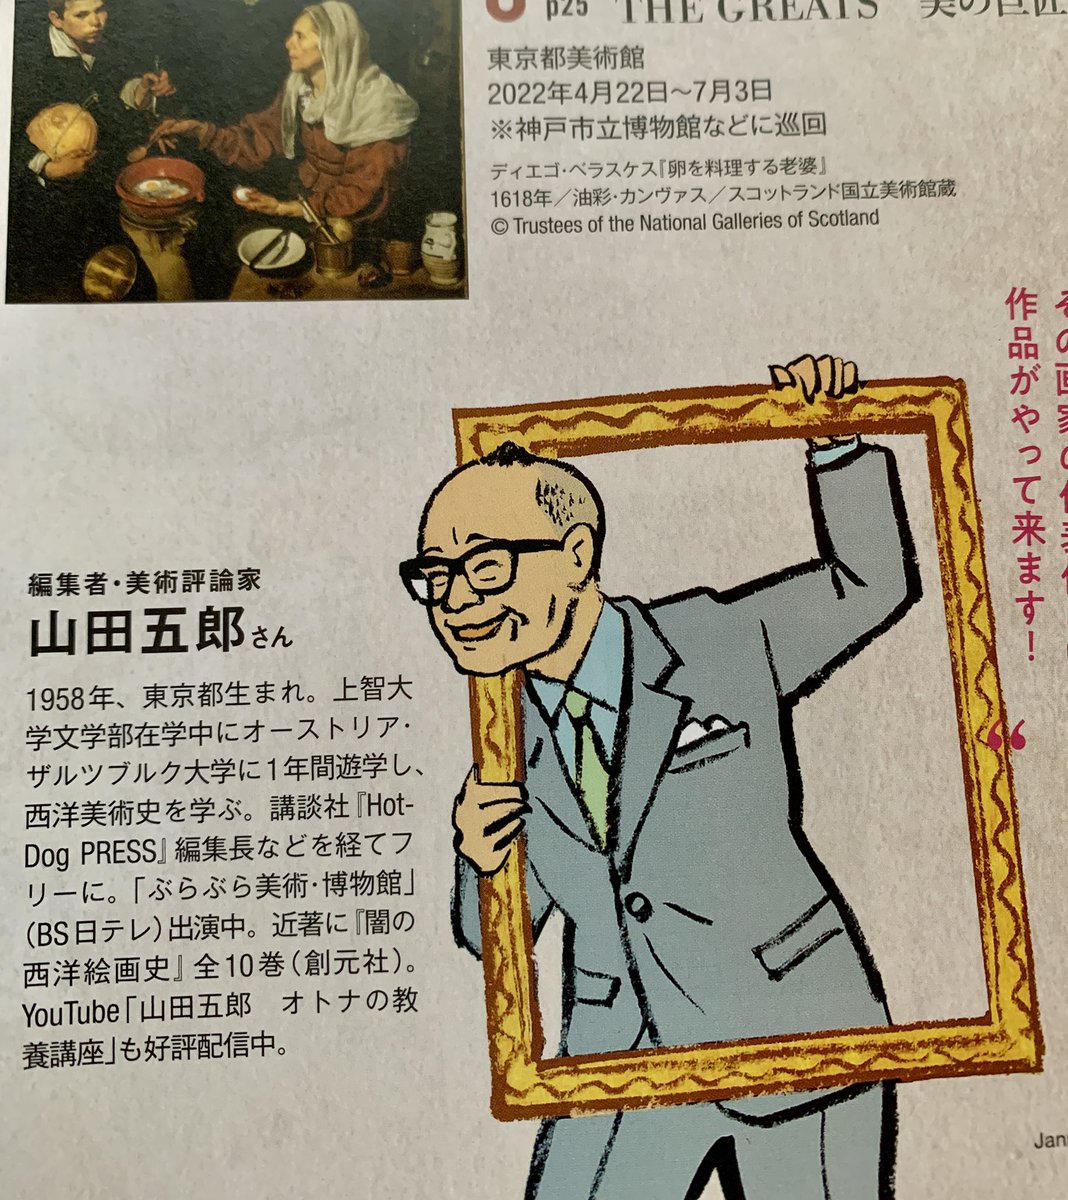 発売中「日経おとなのOFF 2022年 絶対に見逃せない美術展」の名物企画
山下裕二さんと山田五郎さんの「やまやま対談」の絵を描いております。 